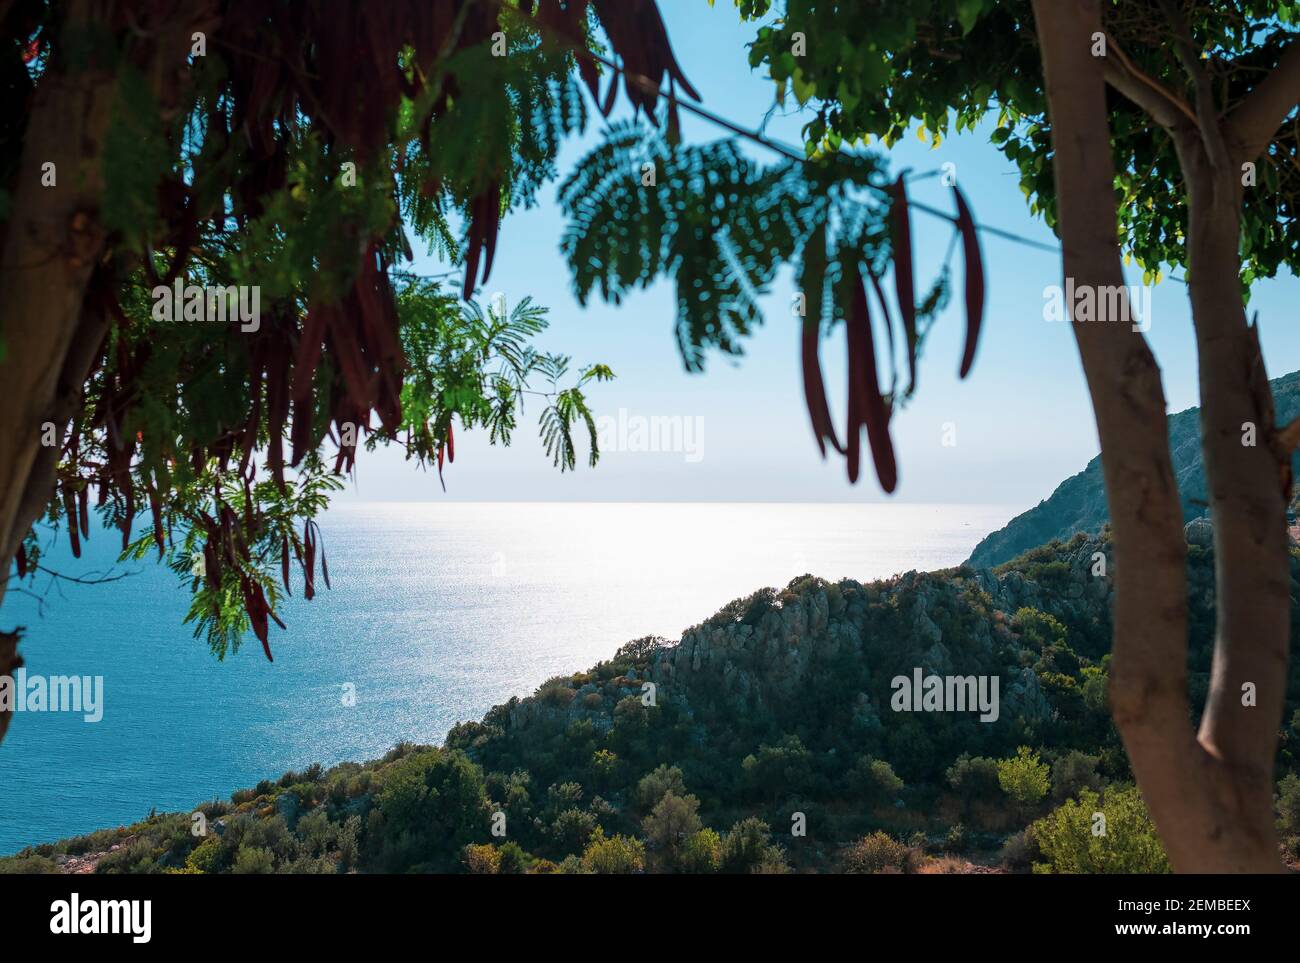 View of Mediterranean coast through the trees, southern Turkey Stock Photo